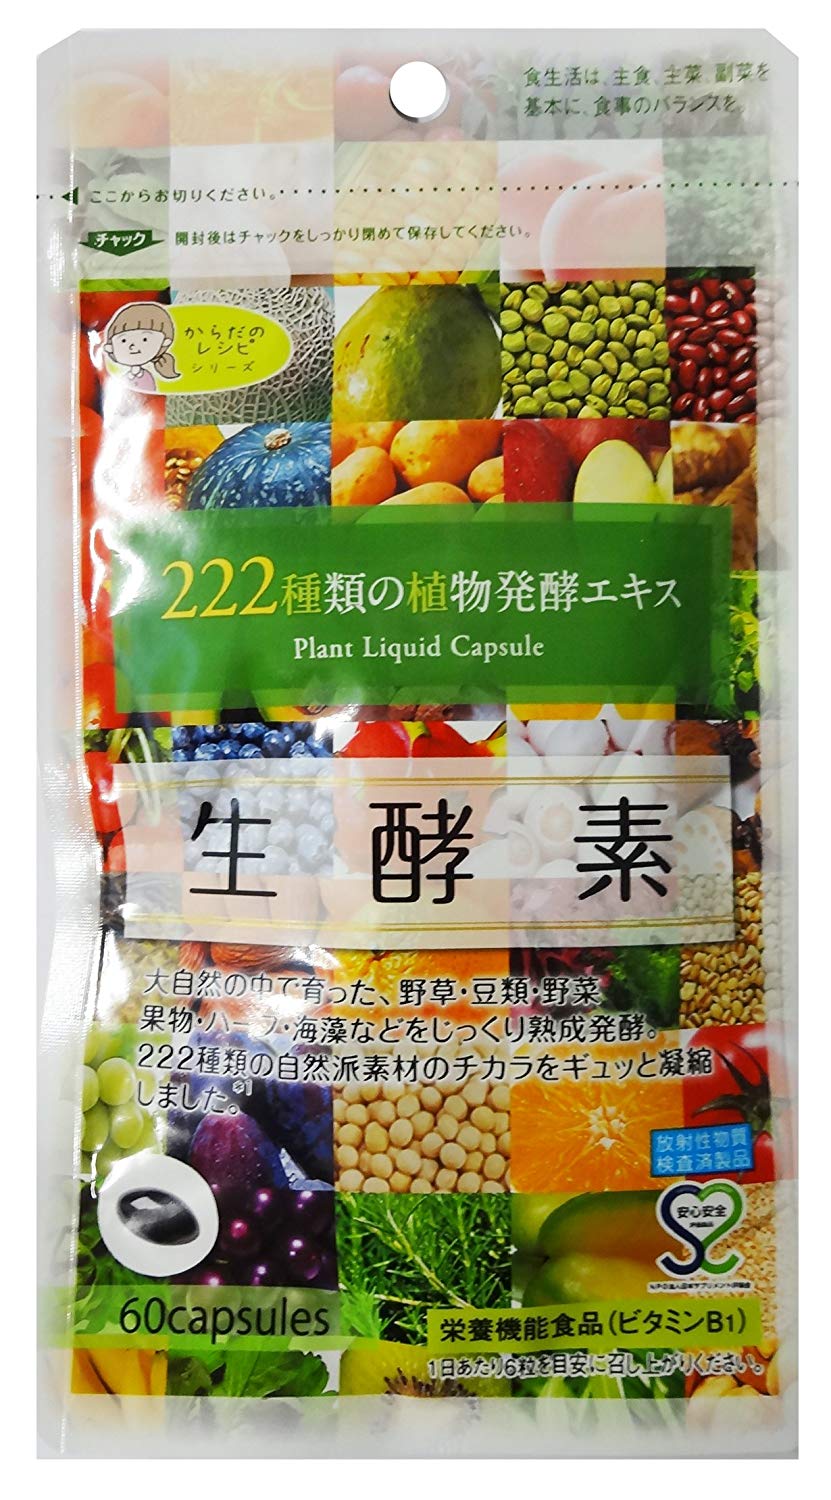 日本高口碑减肥排毒酵素之一！GypsophilA (Jipusofira) 222种天然水果酵素/瘦身排毒 21.66加元特卖！